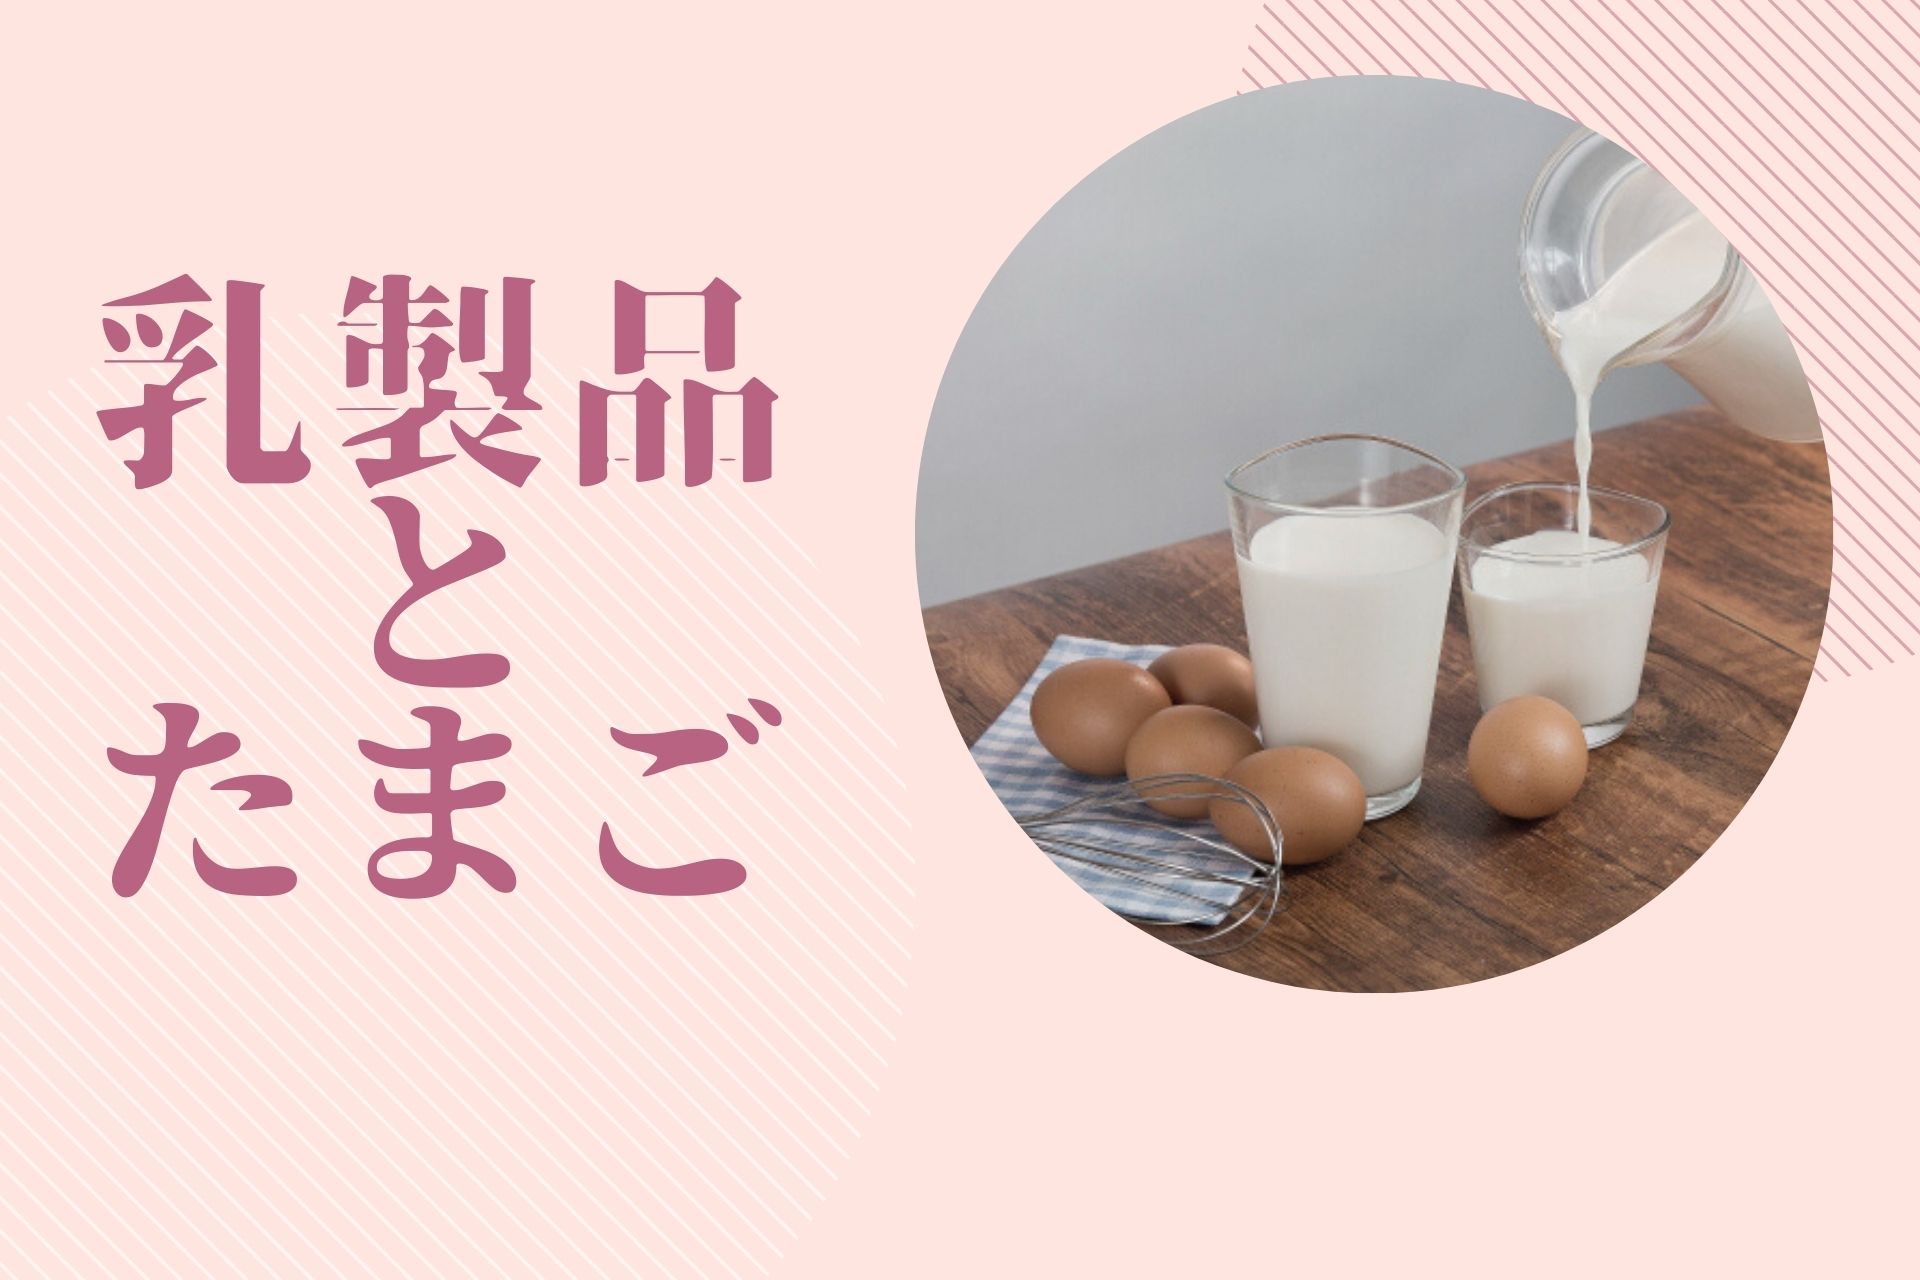 乳製品と卵の特徴